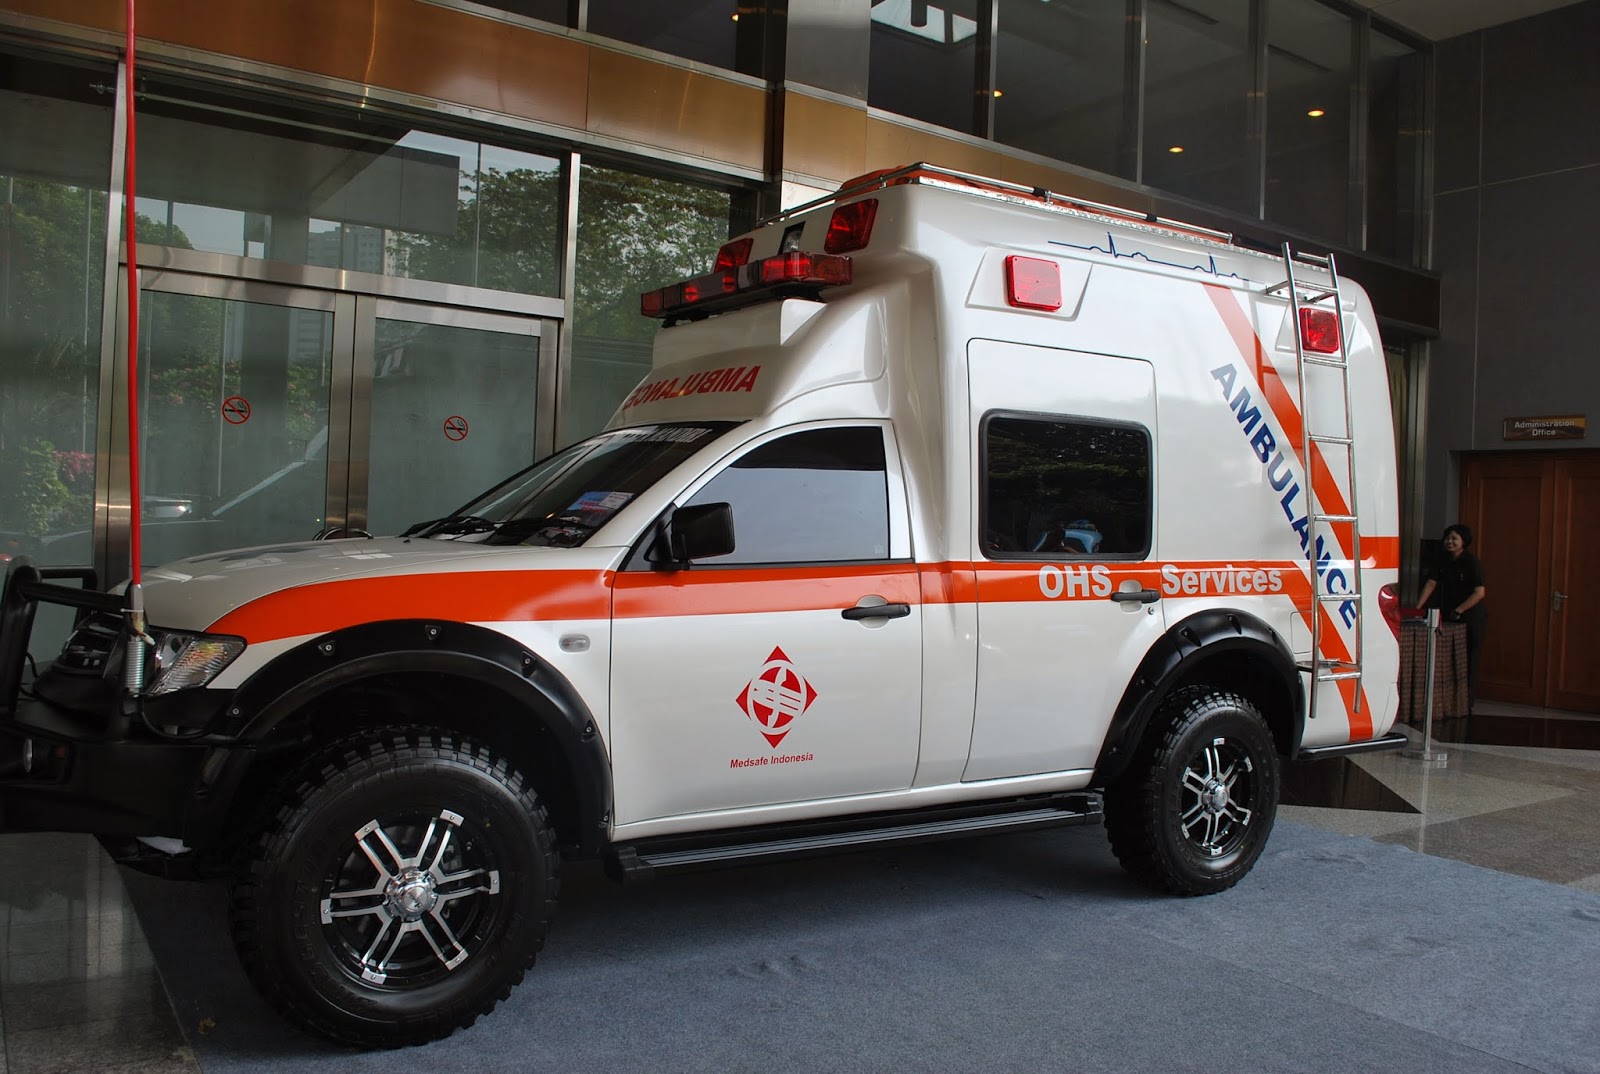 Foto Mobil Ambulance Terbaru Tahun Ini Kawan Modifikasi